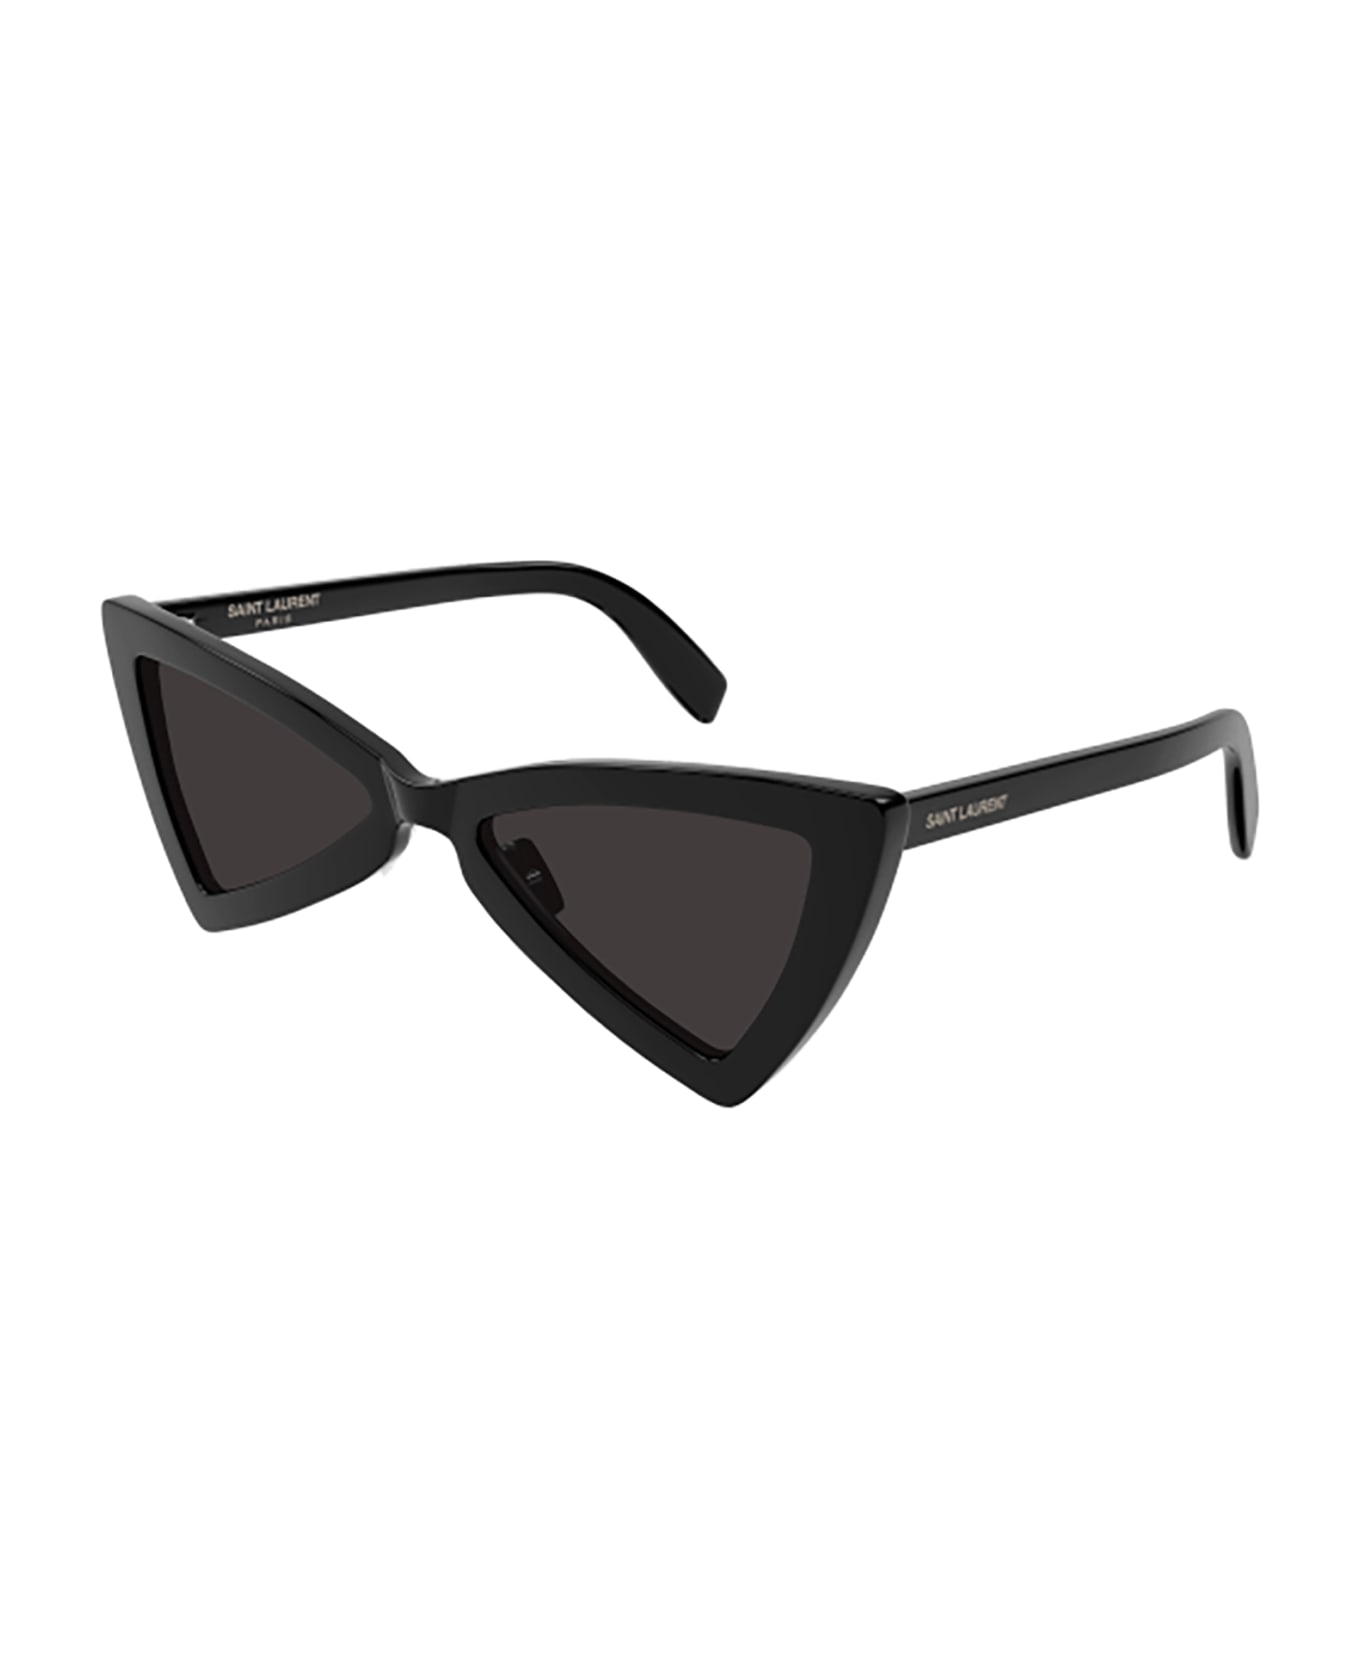 Saint Laurent Eyewear SL 207 JERRY Sunglasses - Black Black Black